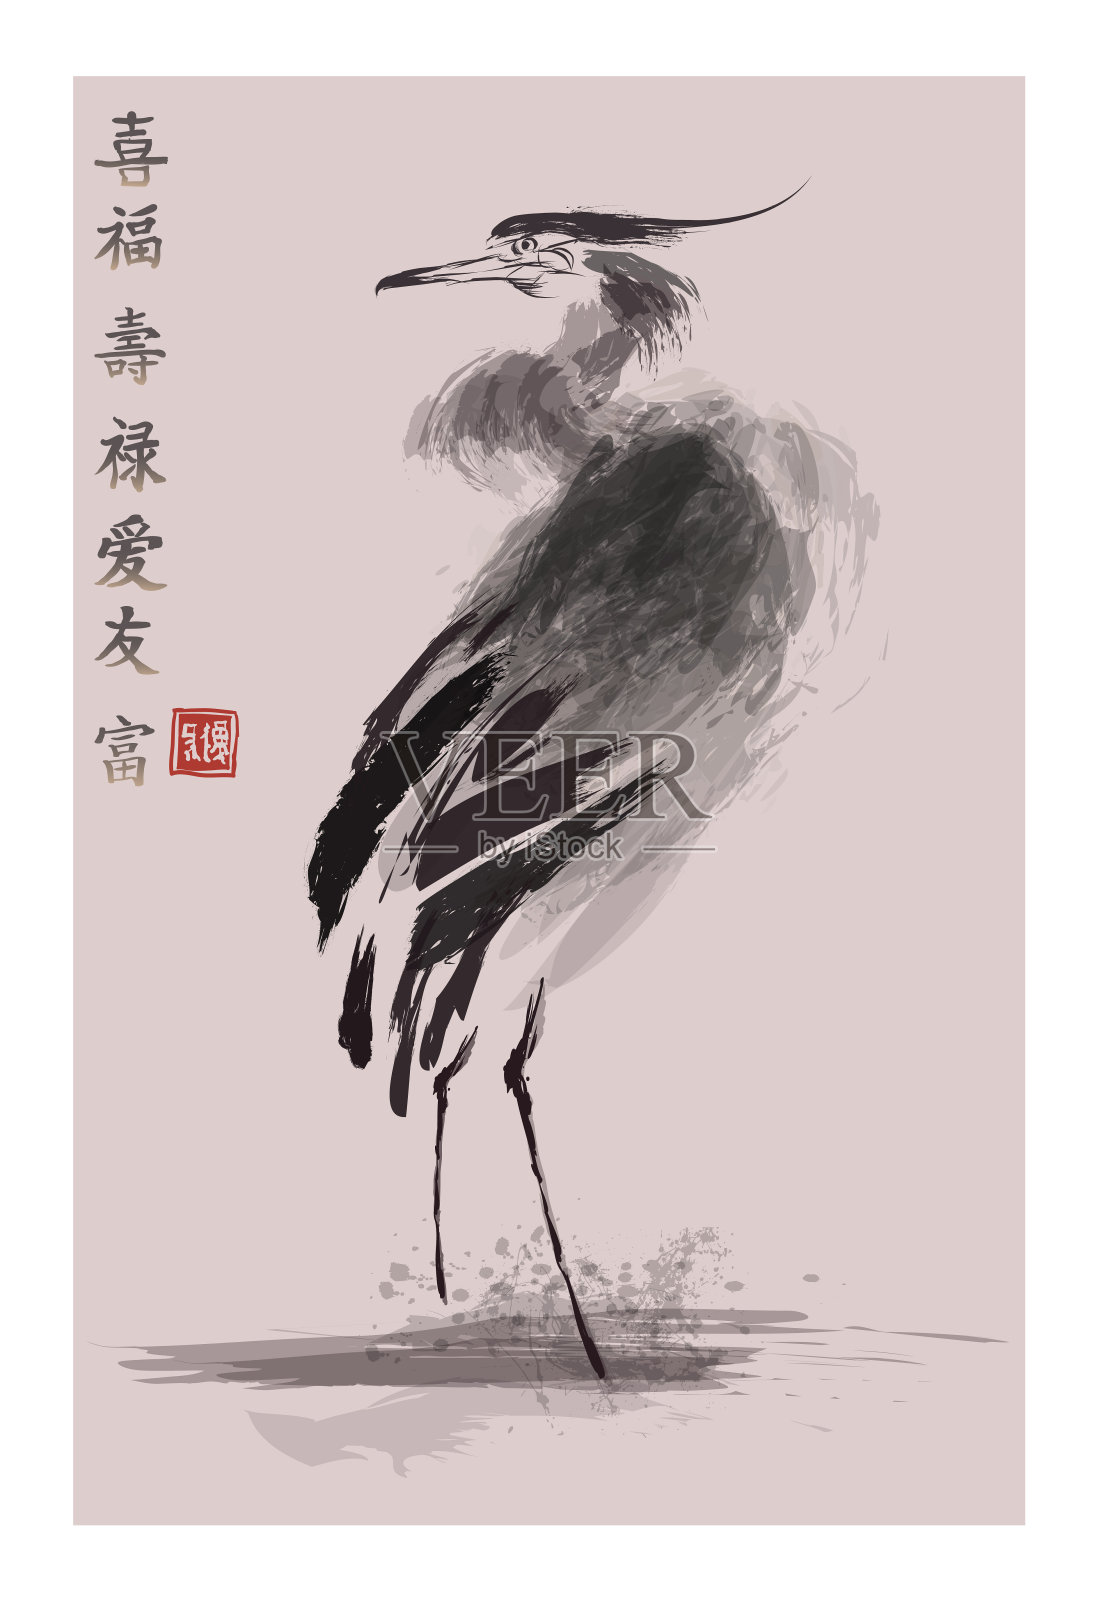 中国古代绘画风格的苍鹭插画图片素材